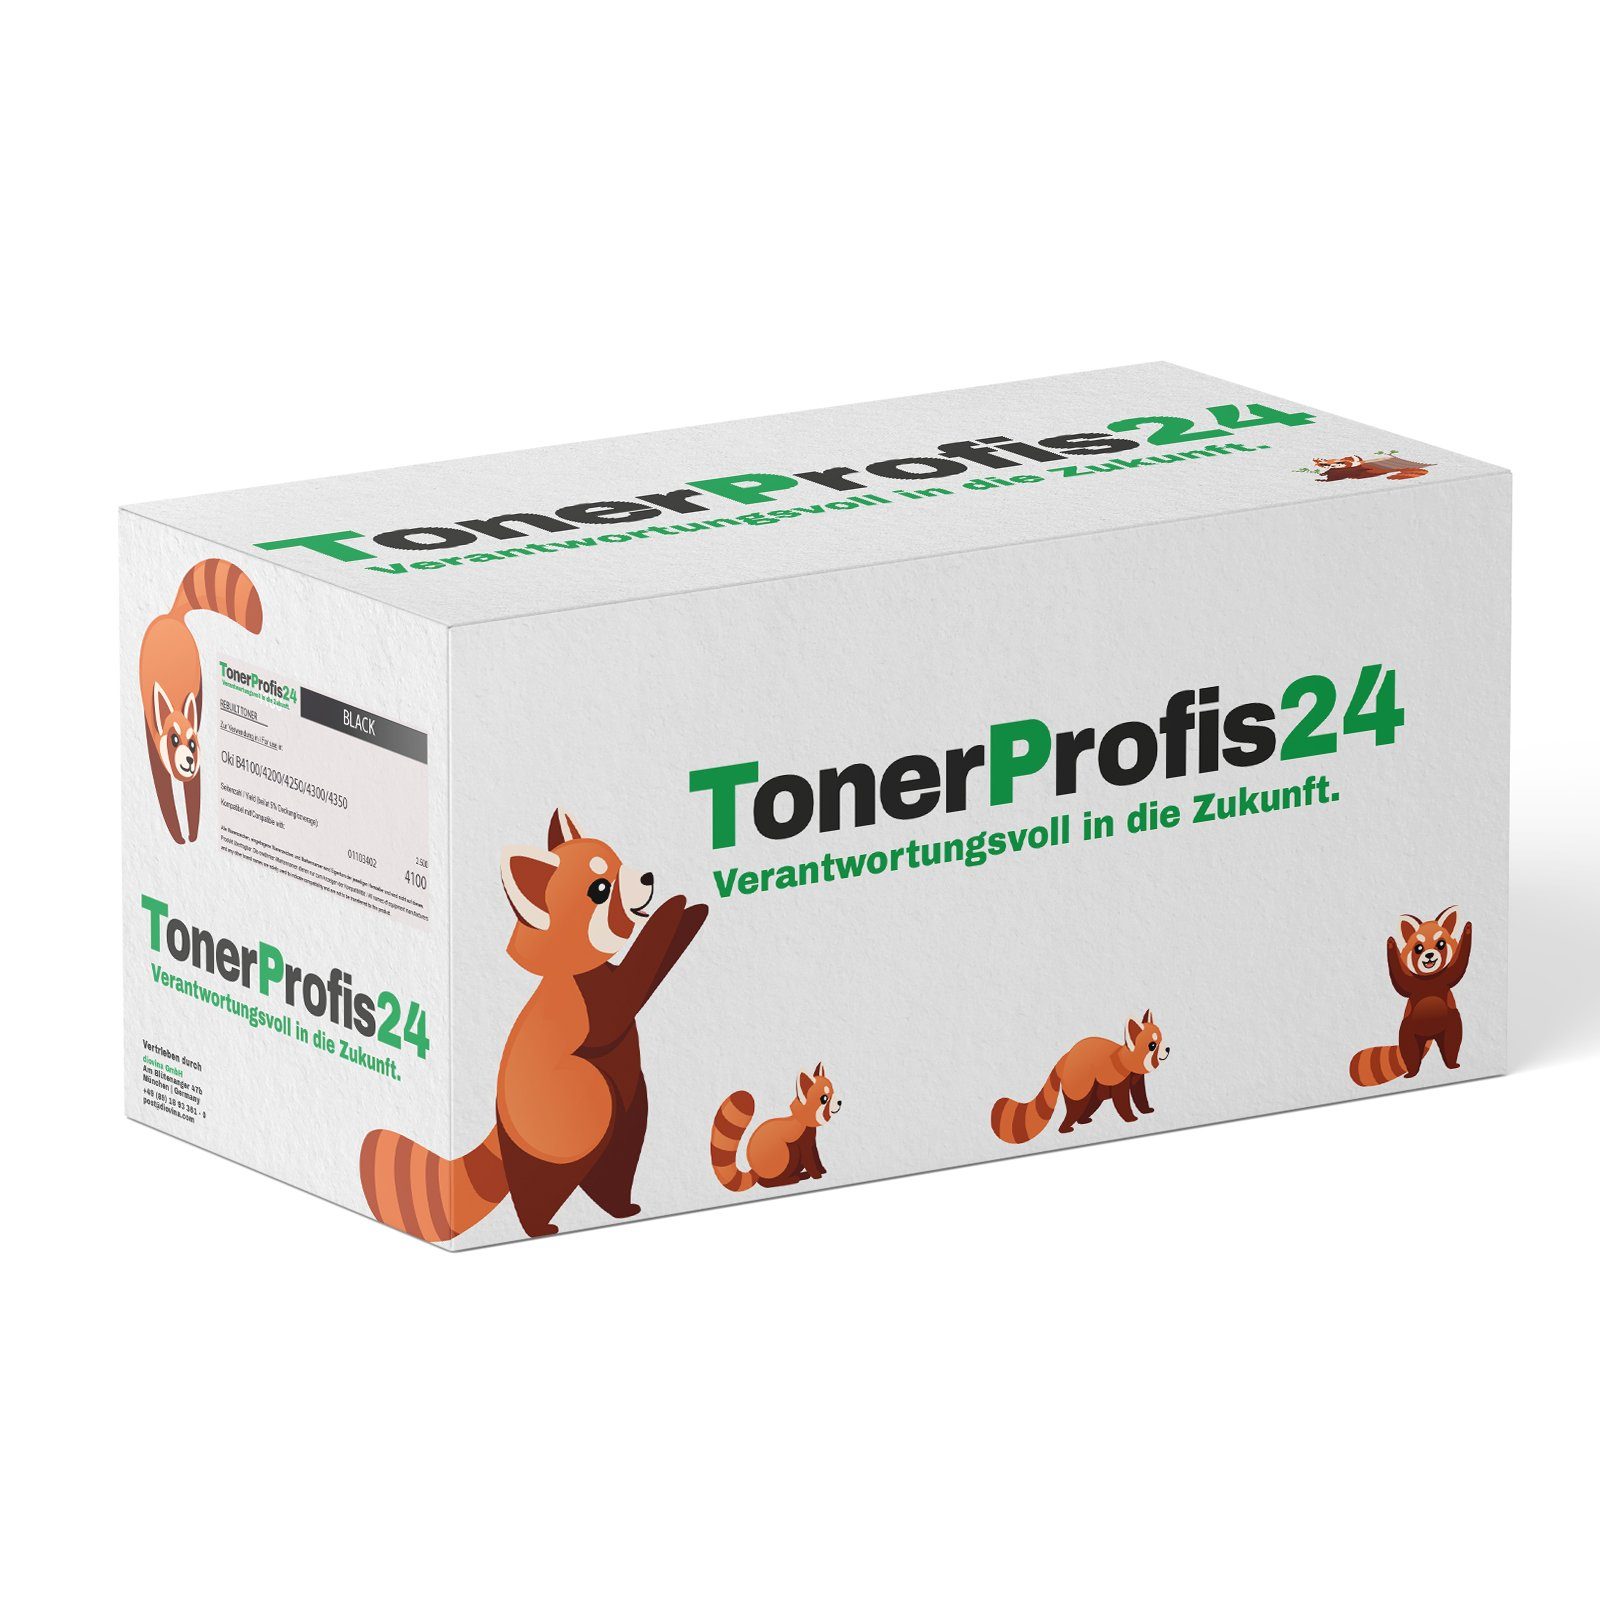 TonerProfis24 Tonerkartusche ReFill Toner * ersetzt HP CF232A / 32A, drum-unit